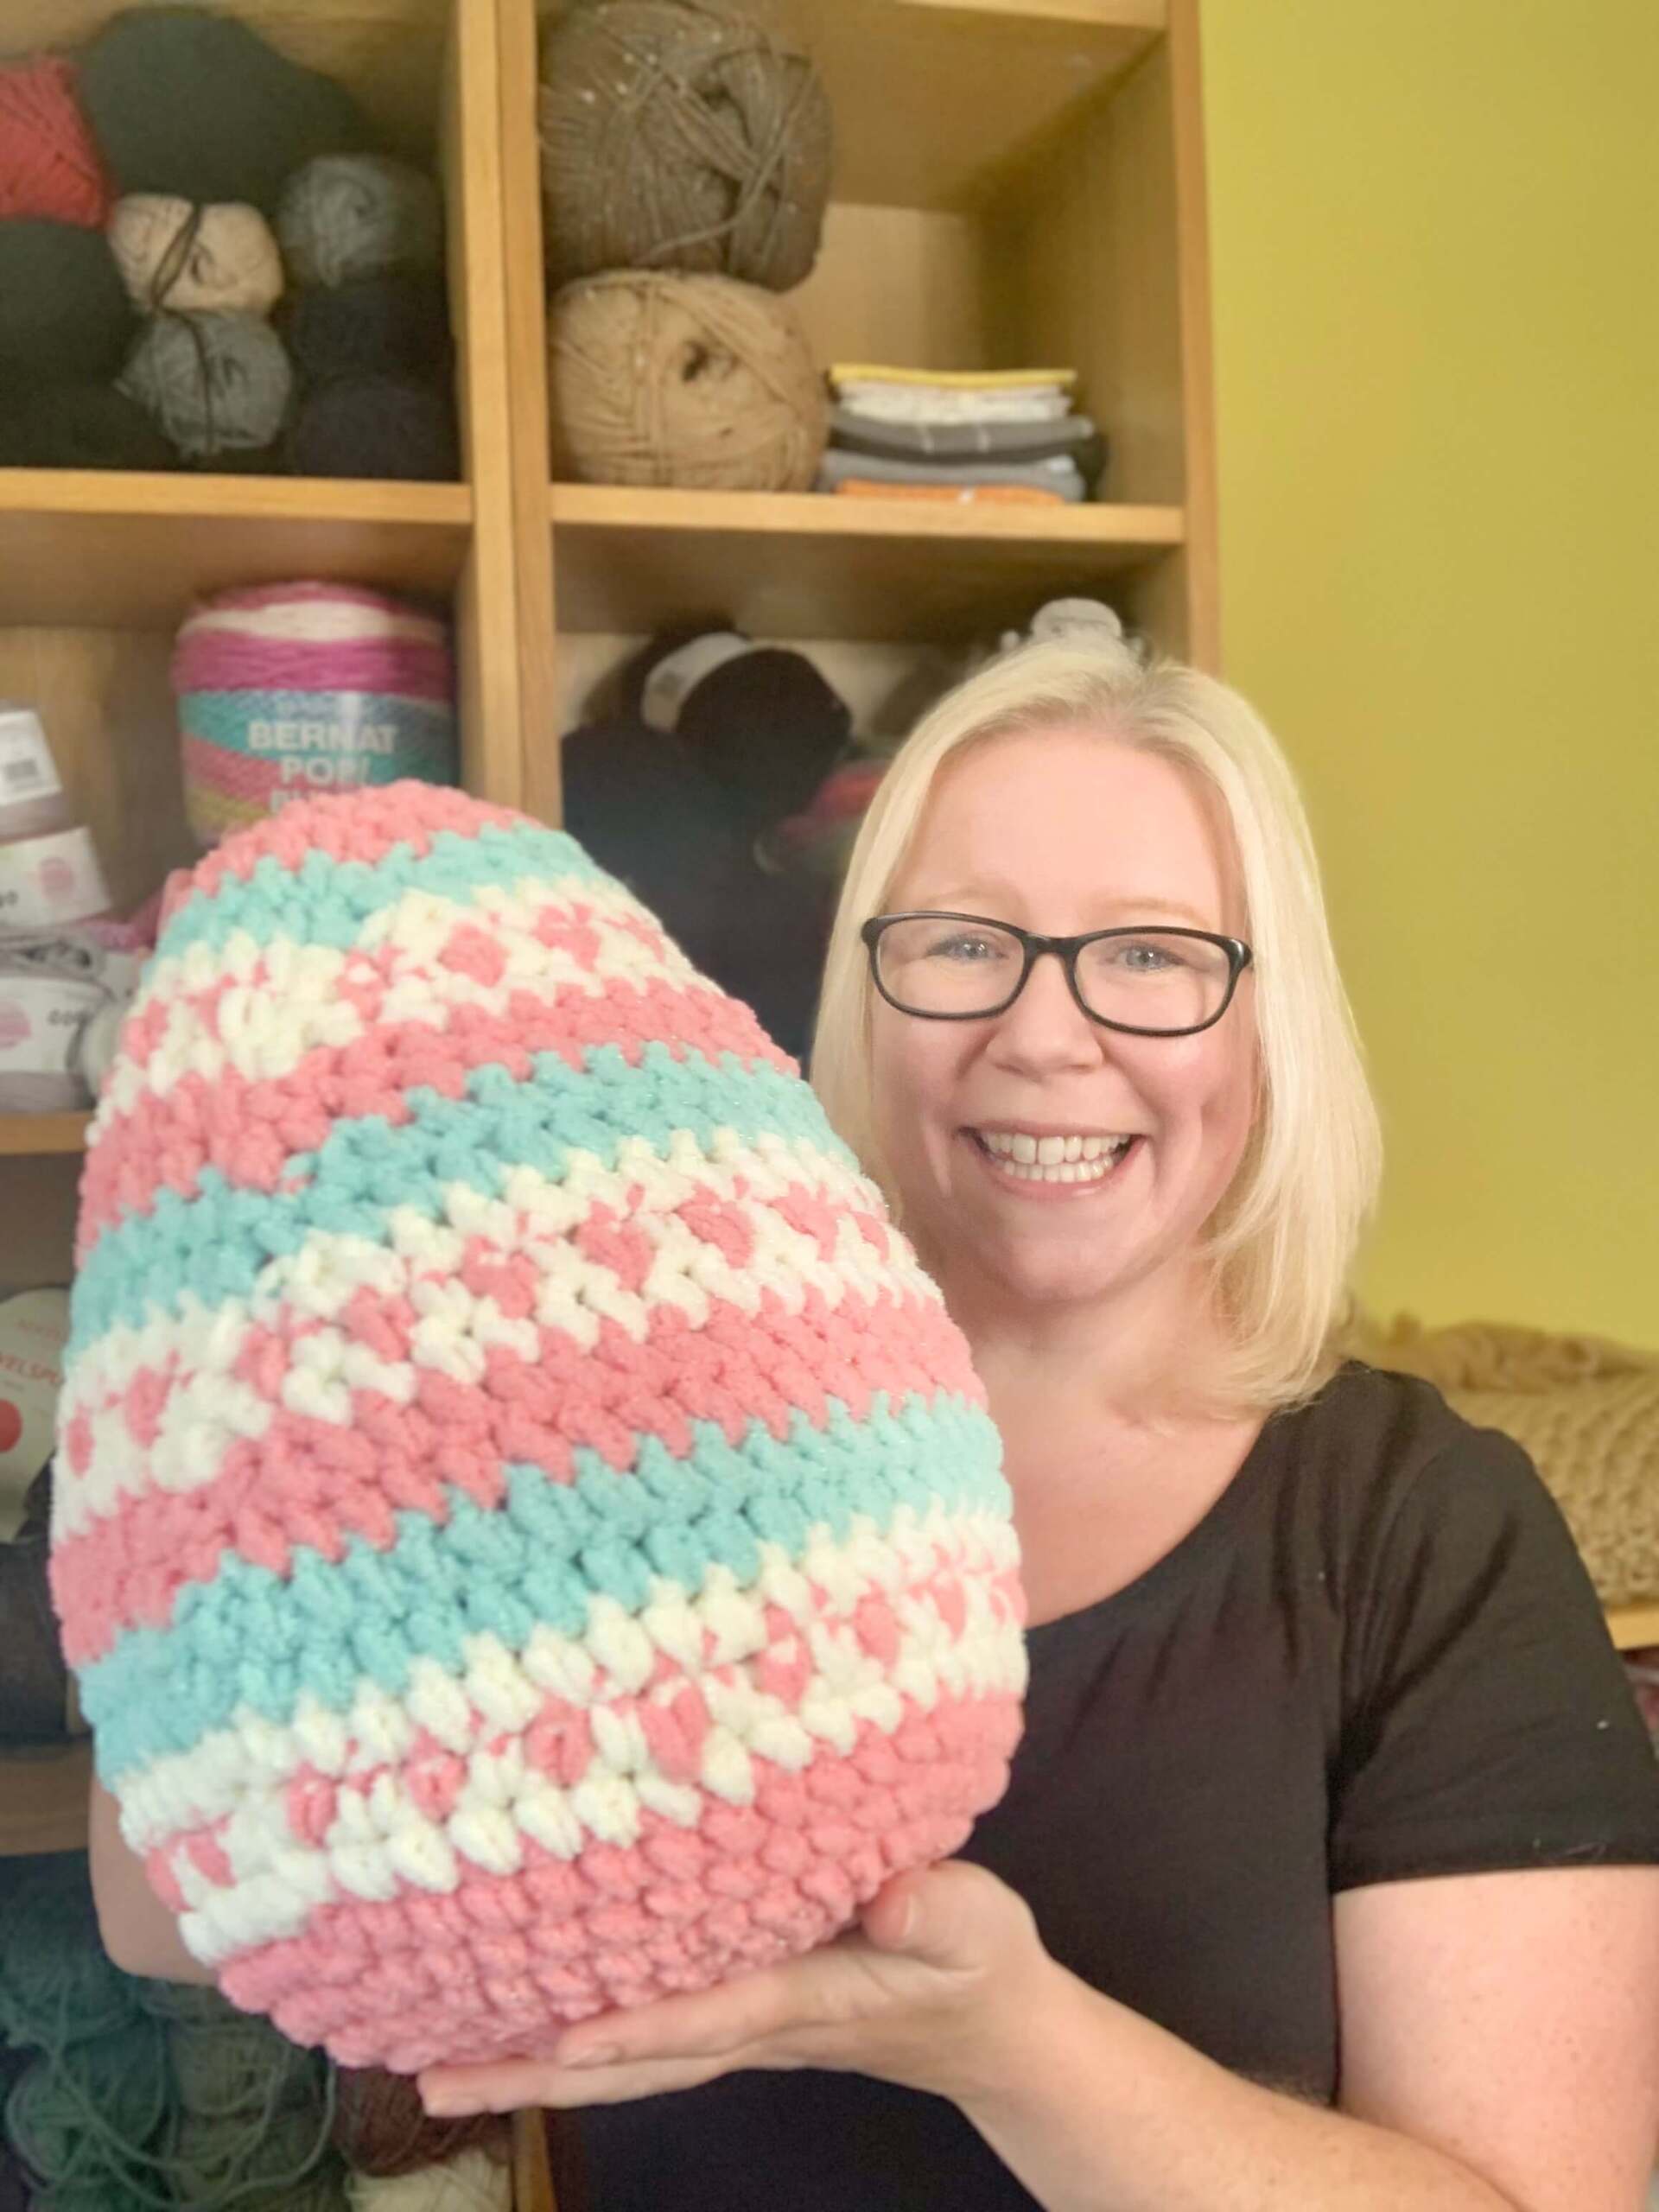 Giant Crochet Easter Egg blanket yarn